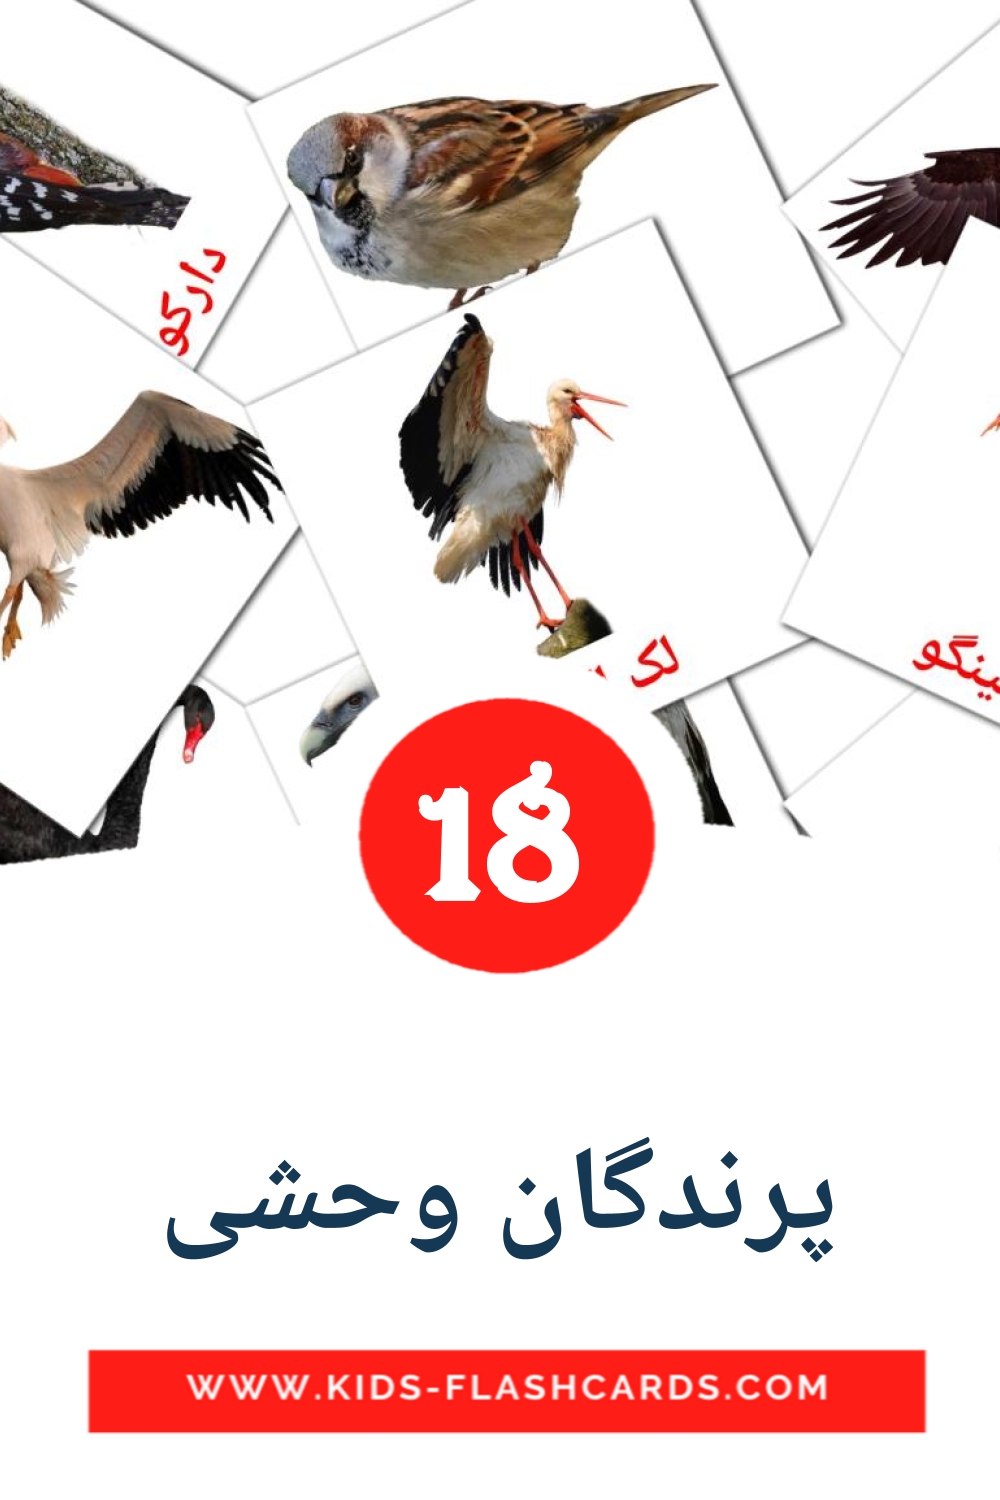 18 پرندگان وحشی Bildkarten für den Kindergarten auf Persisch